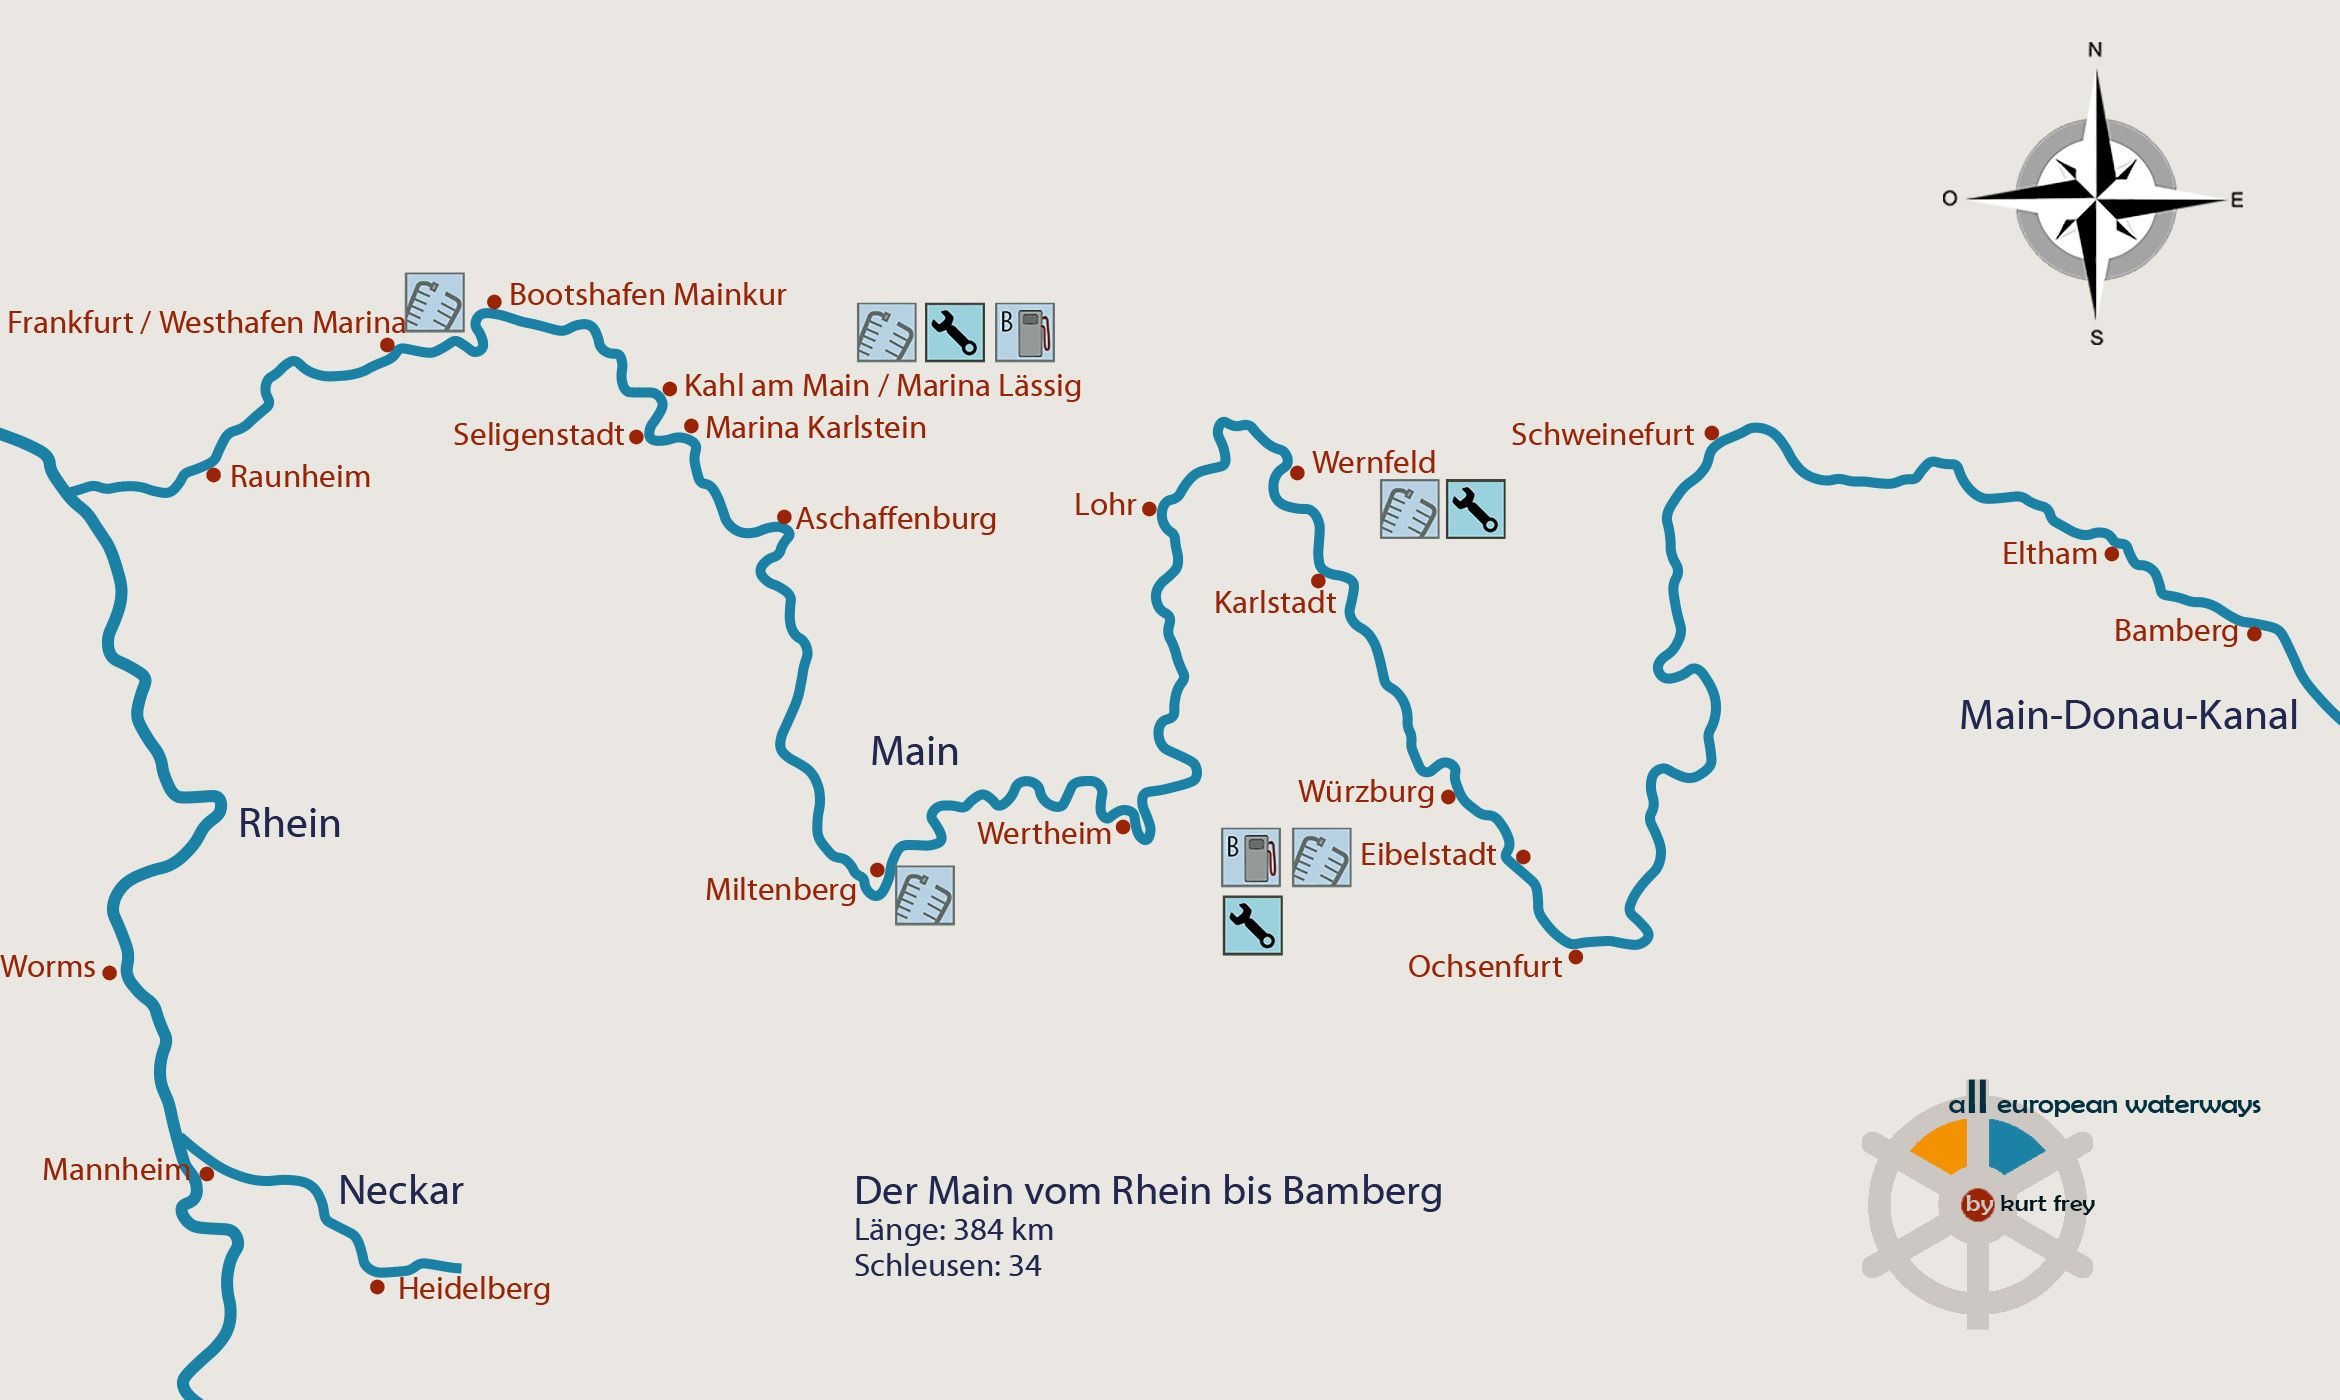 Schiffbare Gewässer, Flüsse, Kanäle, Wasserwege und Seen in Deutschland